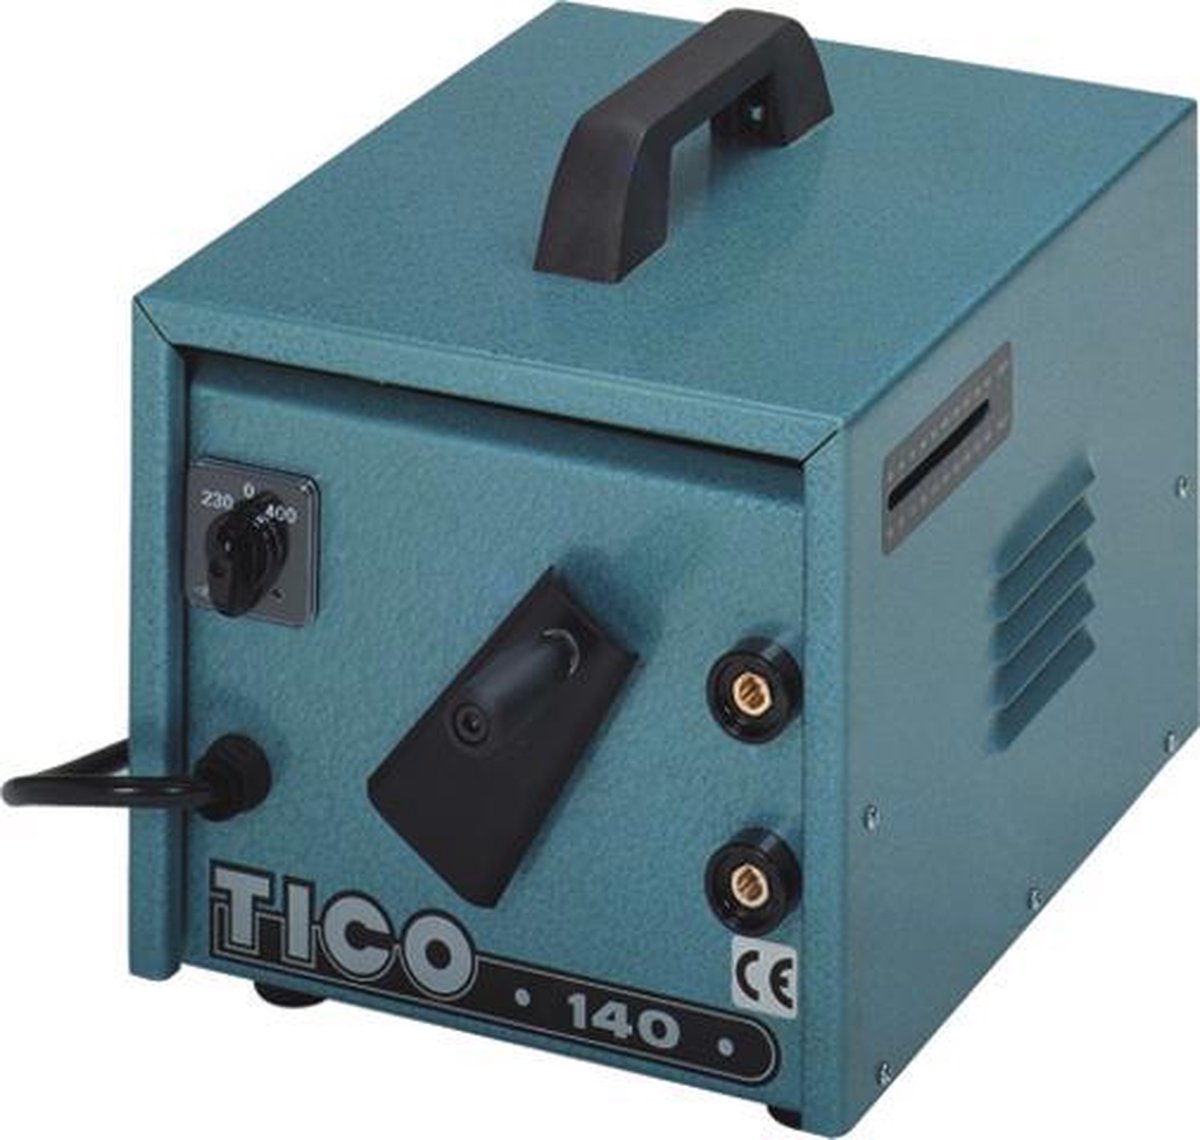 haat graan Smeltend Tico Lastransformator tico 140 1100140 | bol.com